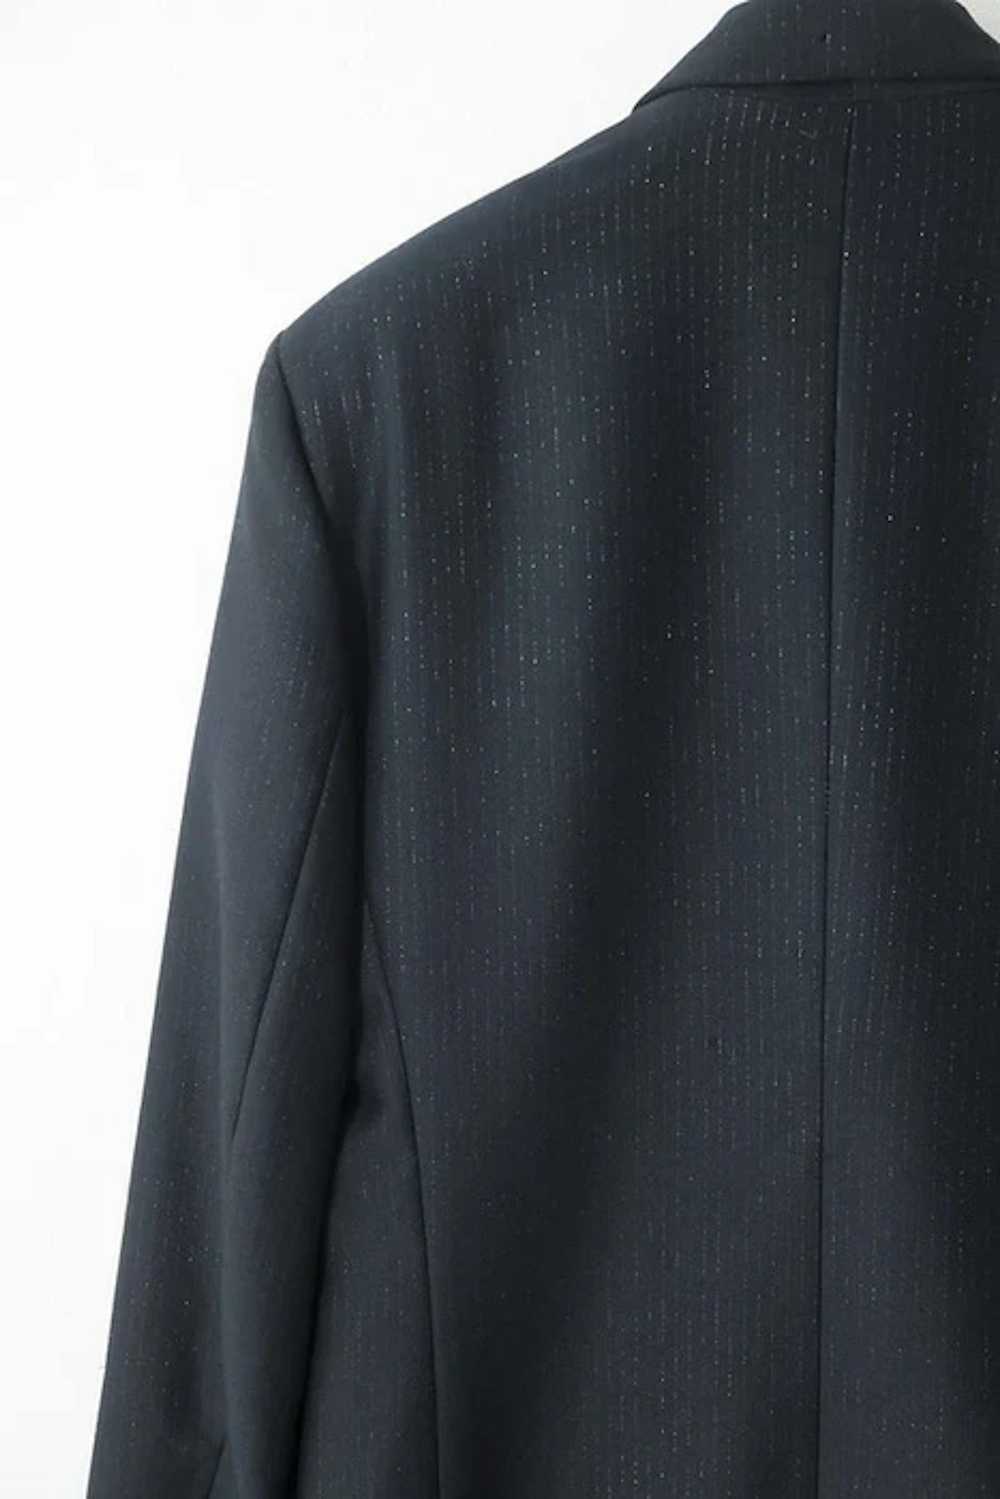 Helmut Lang AW90 metallic pinstripe suit - image 5